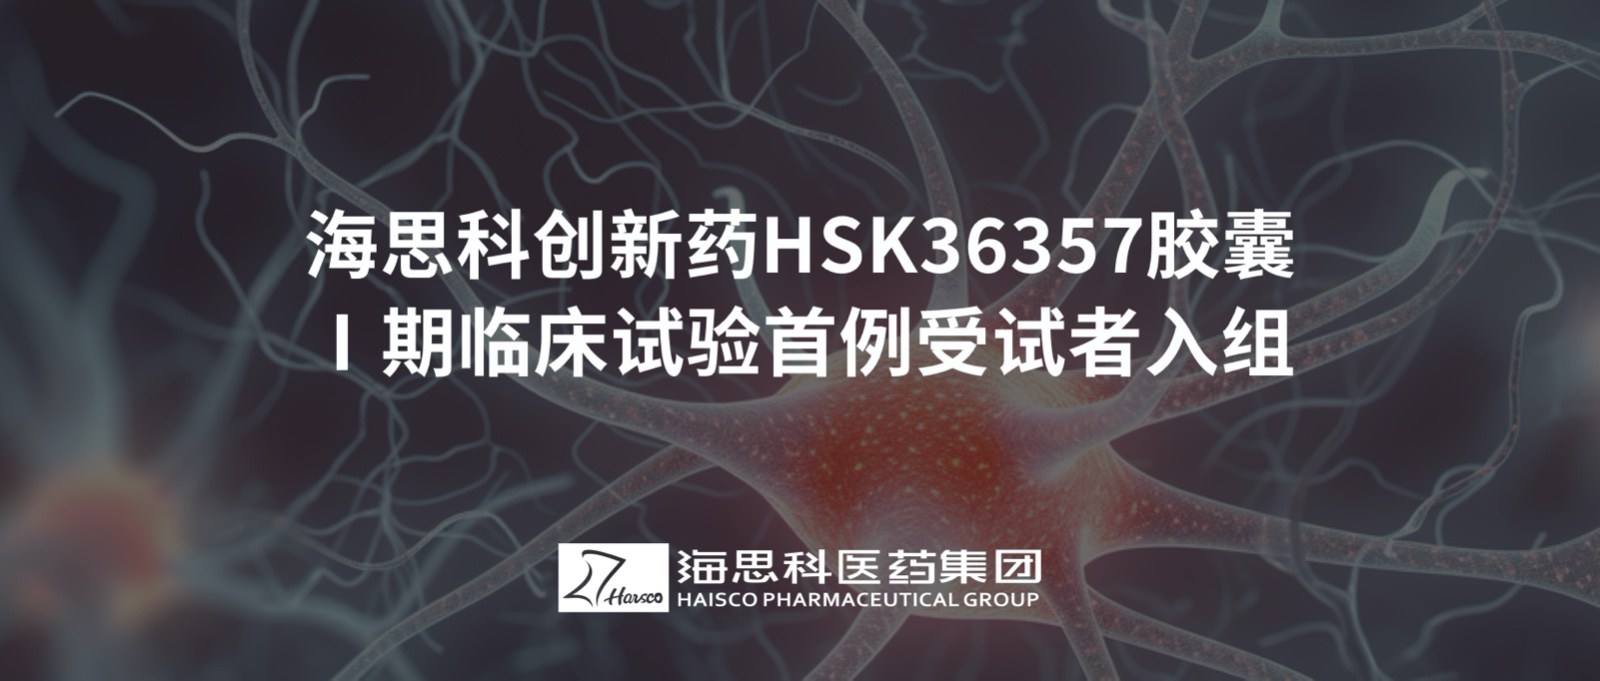 澳门威尼克斯人官网创新药HSK36357胶囊Ⅰ期临床试验首例受试者入组